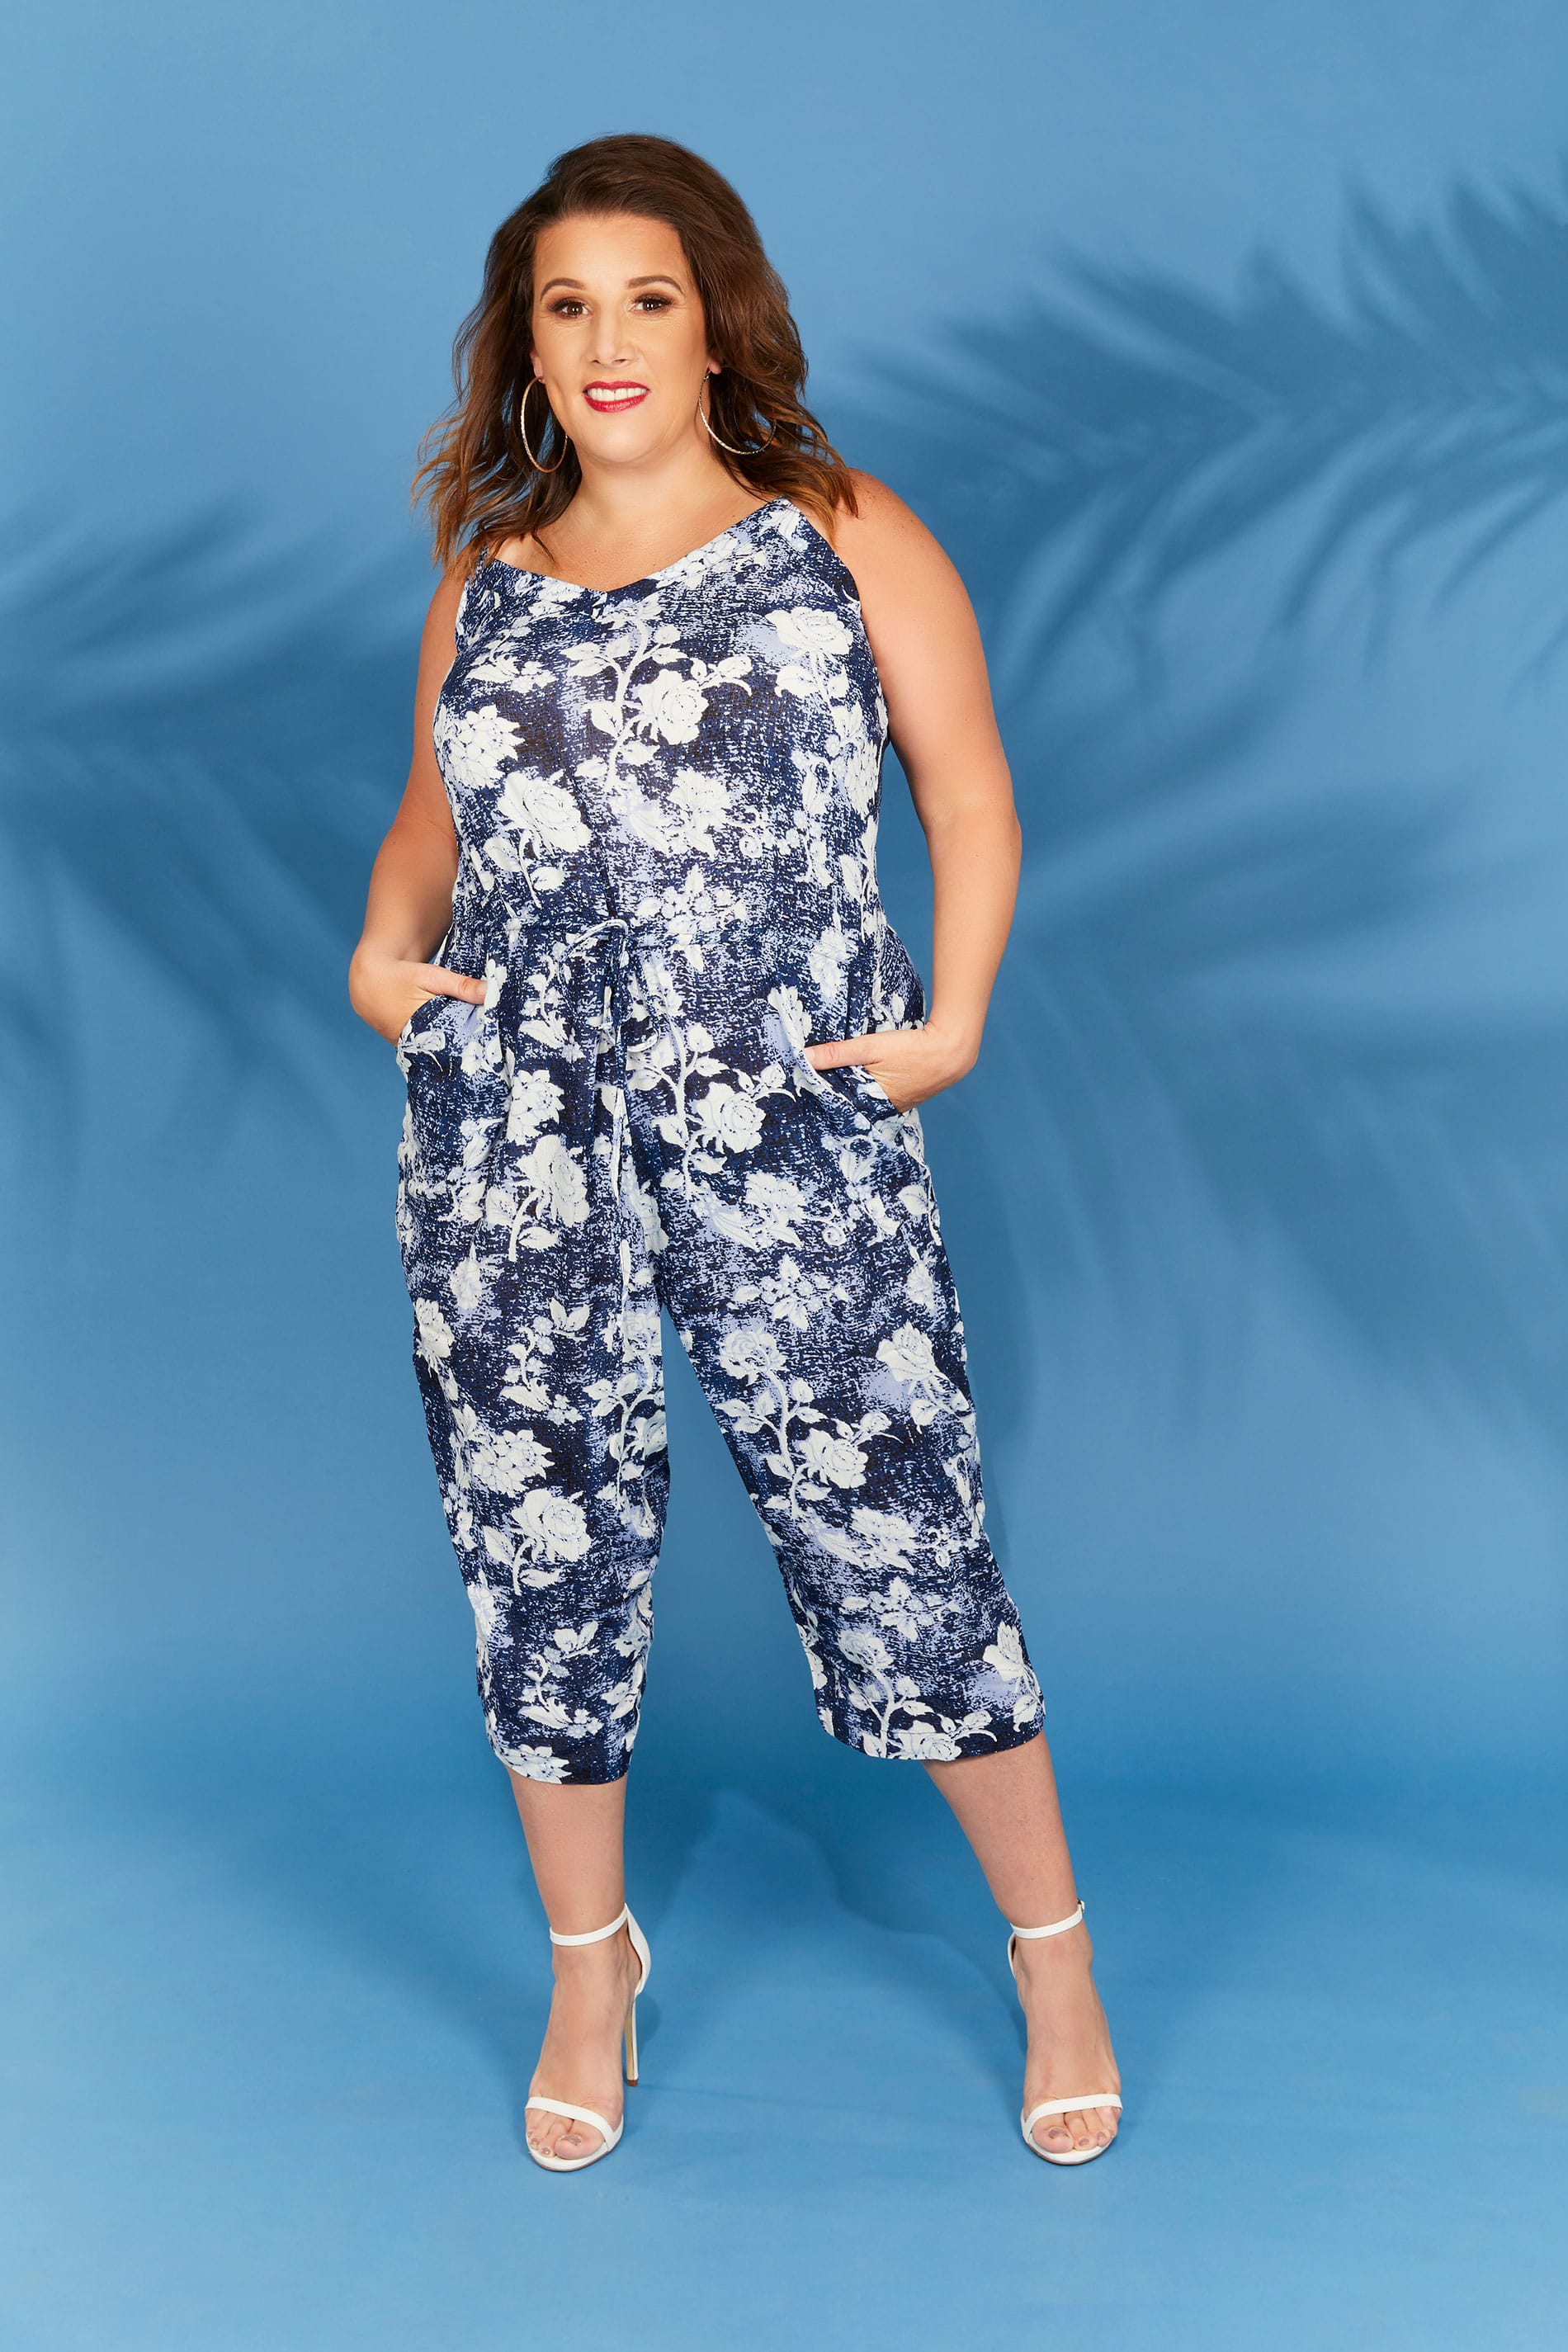 Navy Blue Floral Print Jumpsuit Plus Size 16 To 36